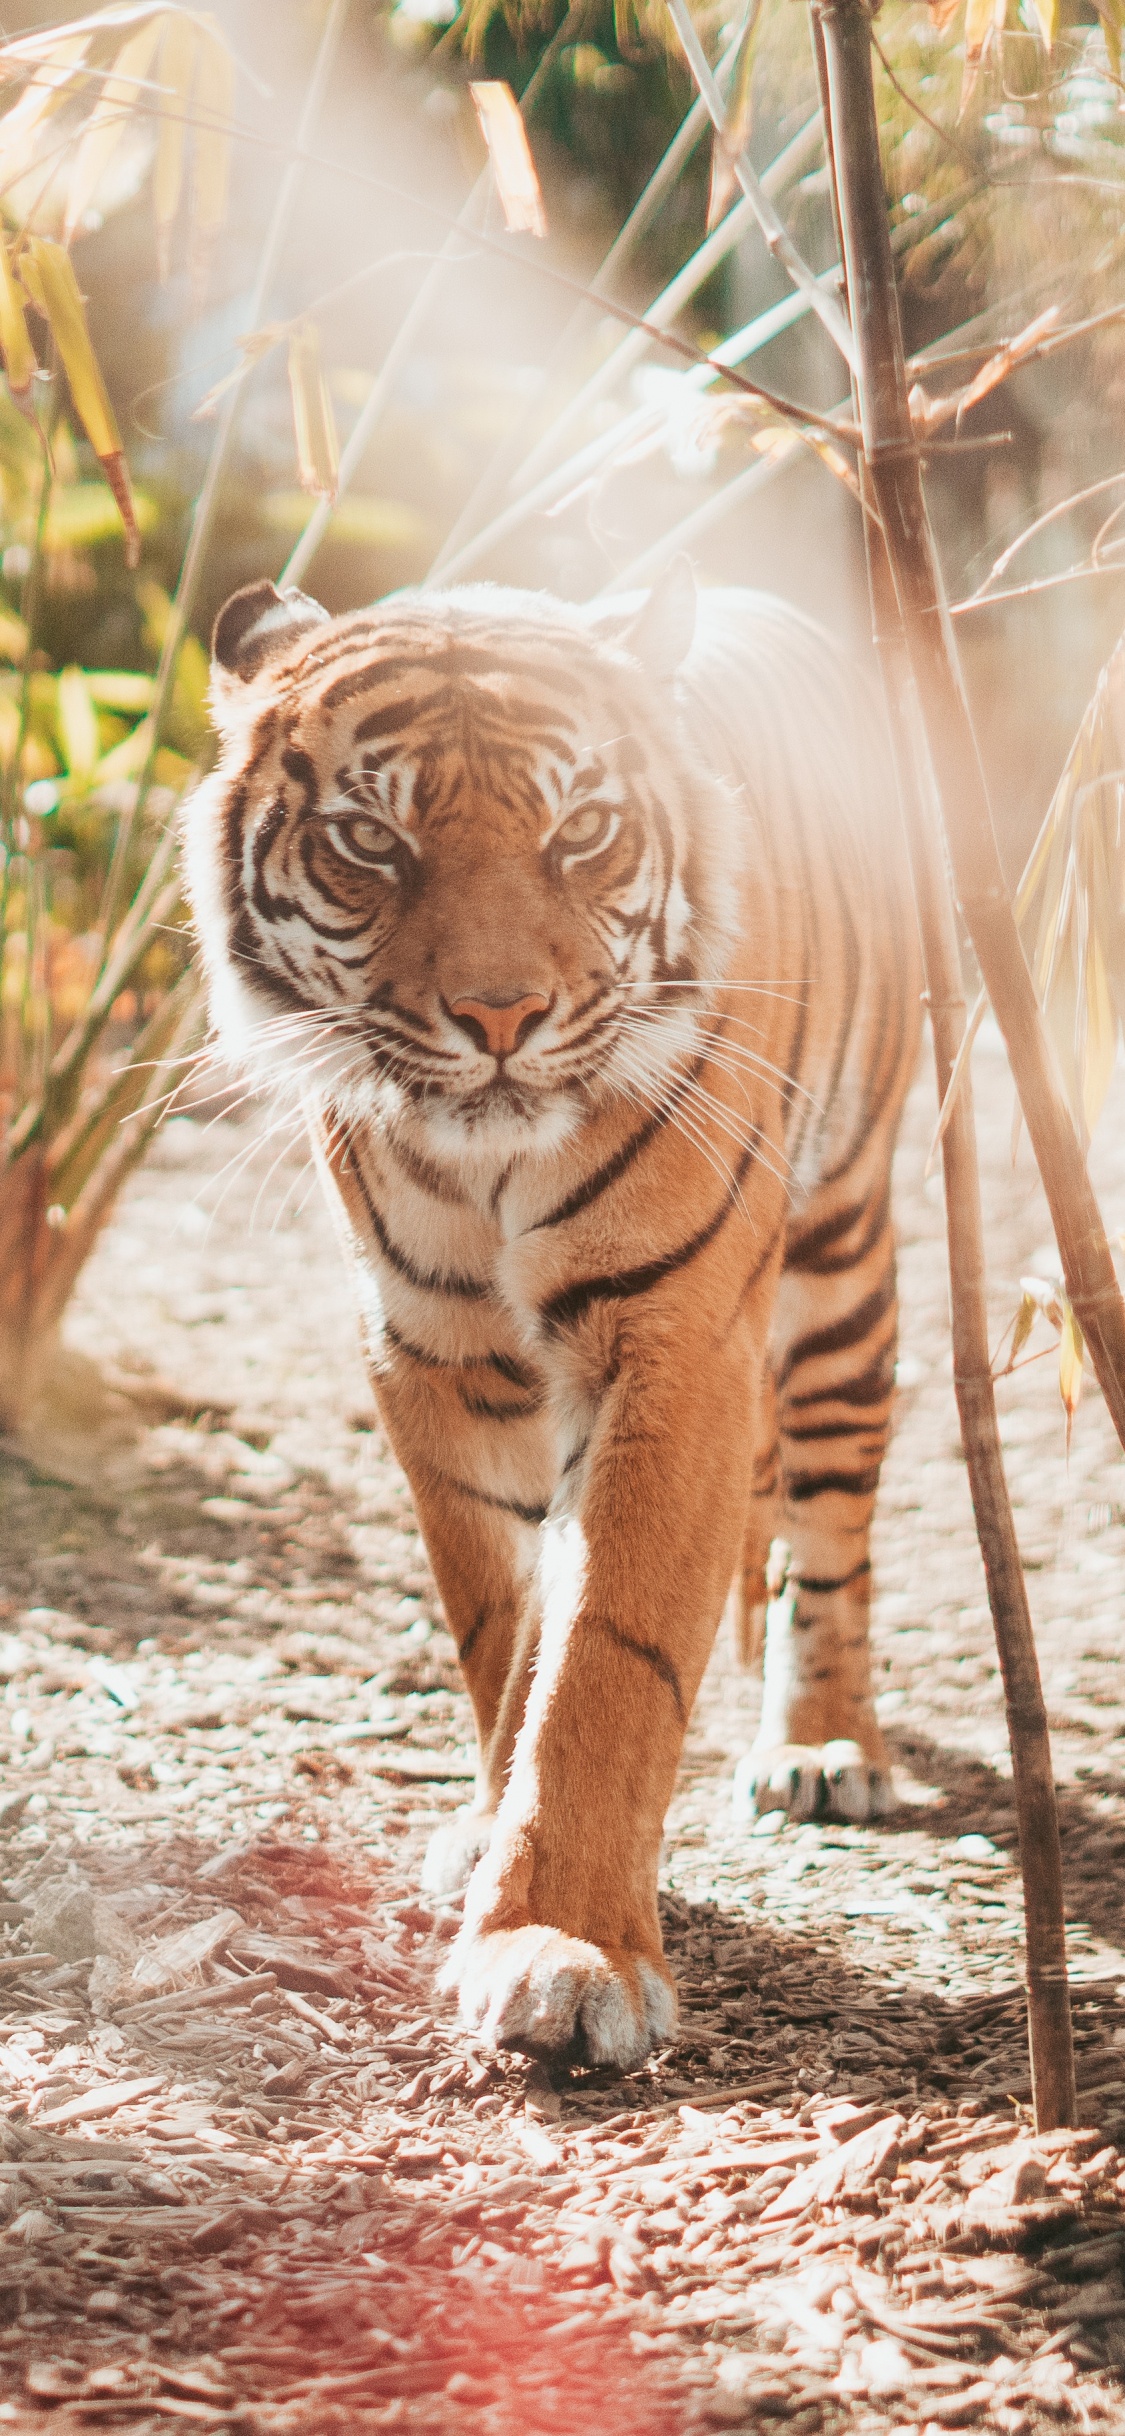 老虎, 孟加拉虎, 野生动物, 陆地动物, 猫科 壁纸 1125x2436 允许